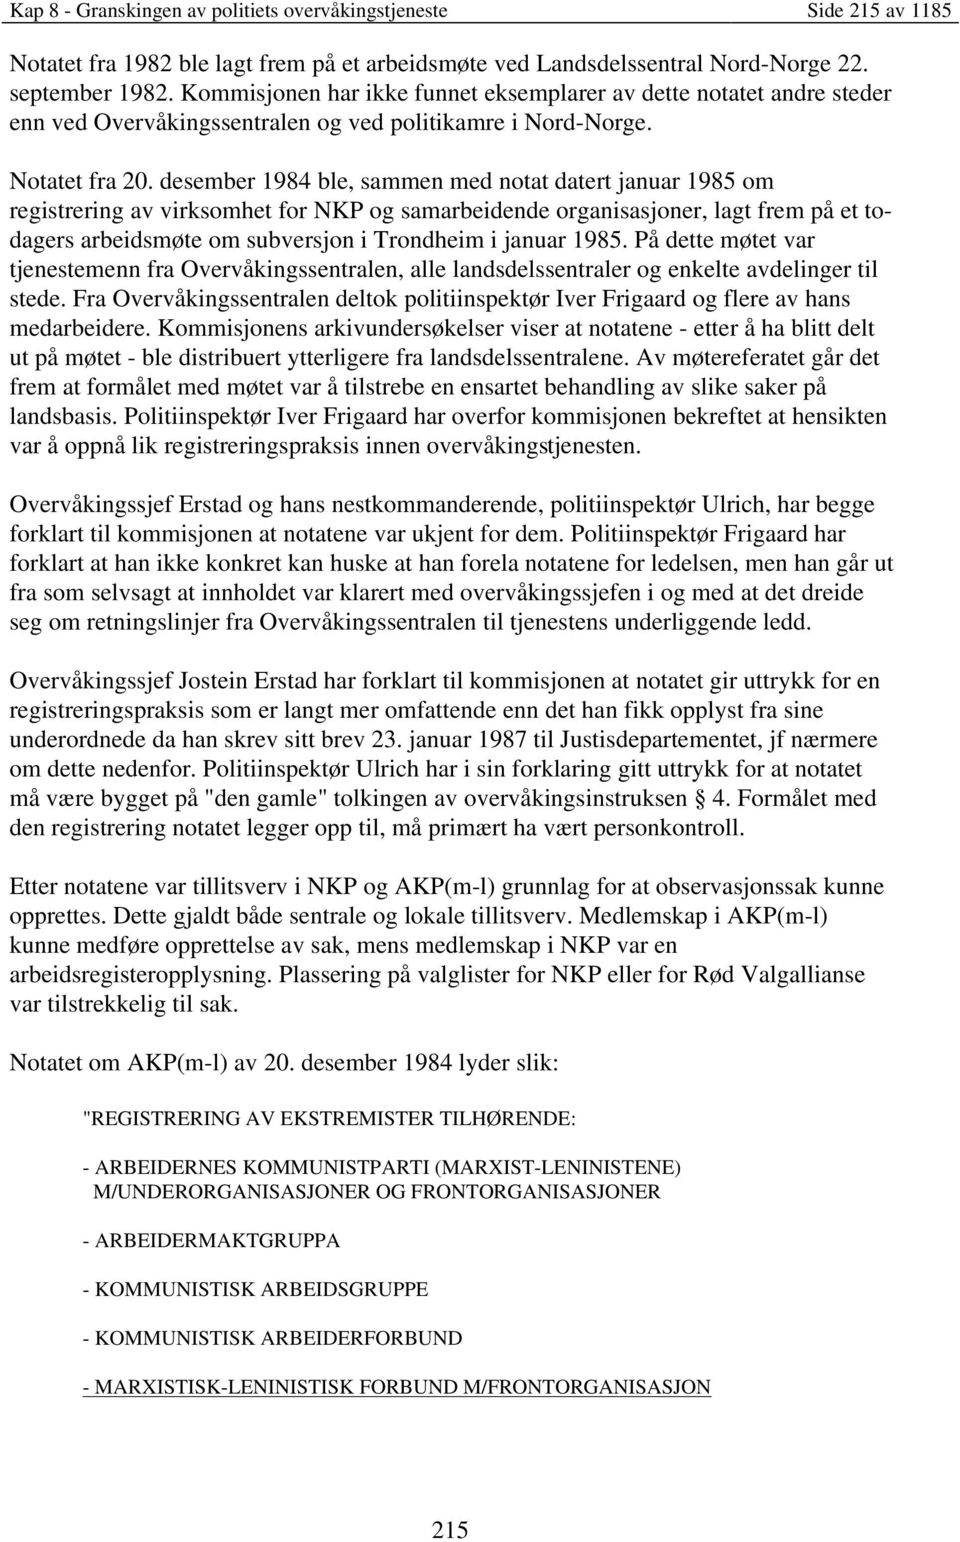 desember 1984 ble, sammen med notat datert januar 1985 om registrering av virksomhet for NKP og samarbeidende organisasjoner, lagt frem på et todagers arbeidsmøte om subversjon i Trondheim i januar